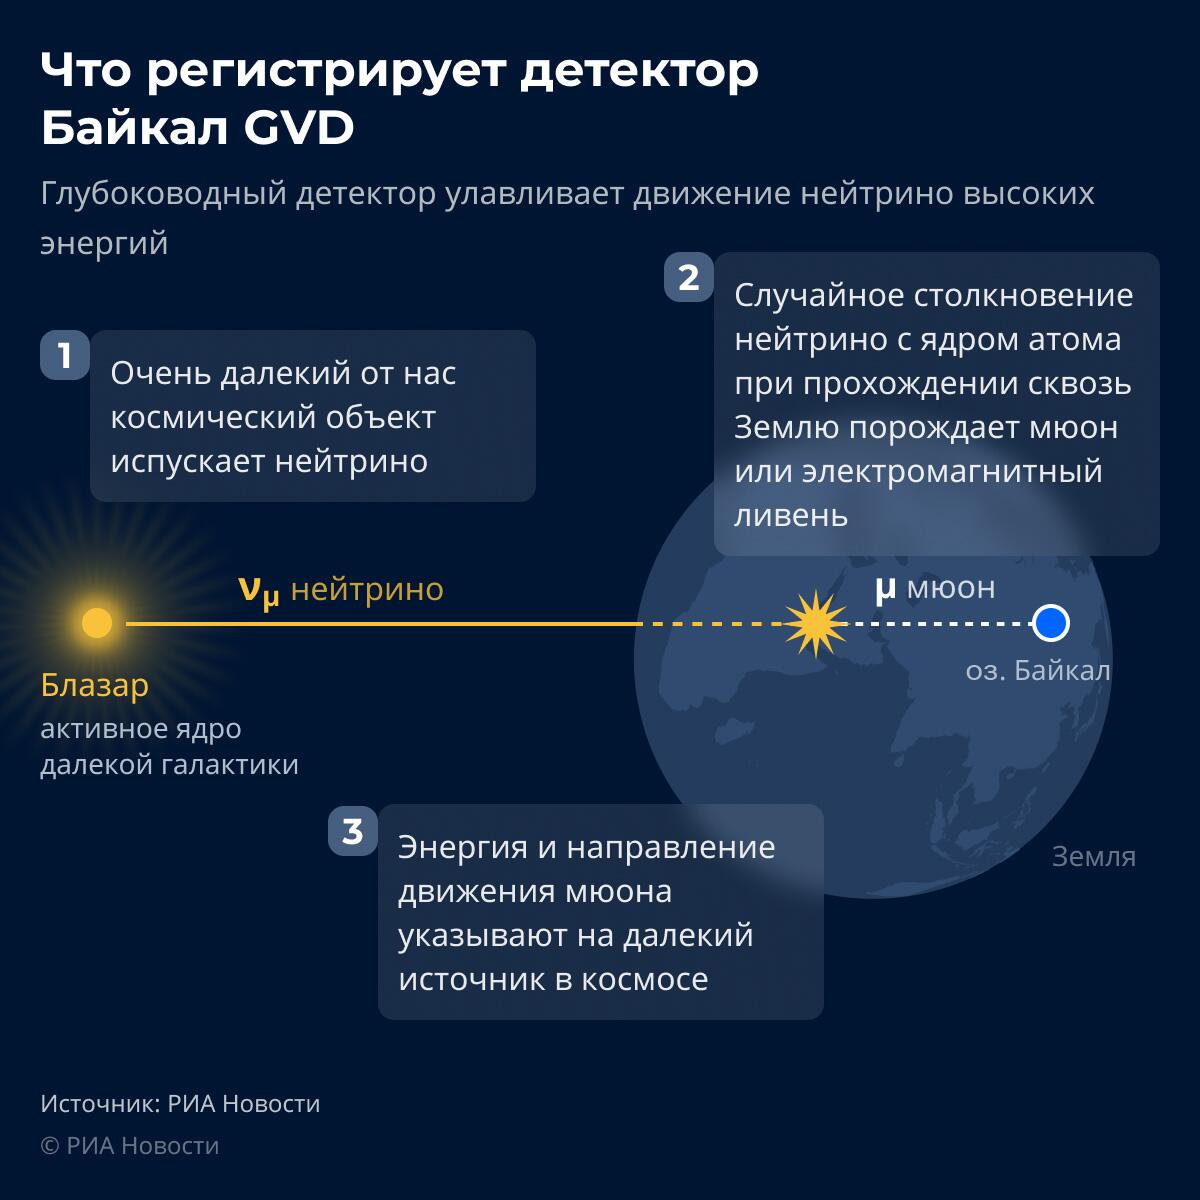 Что регистрирует Байкальский нейтринный детектор